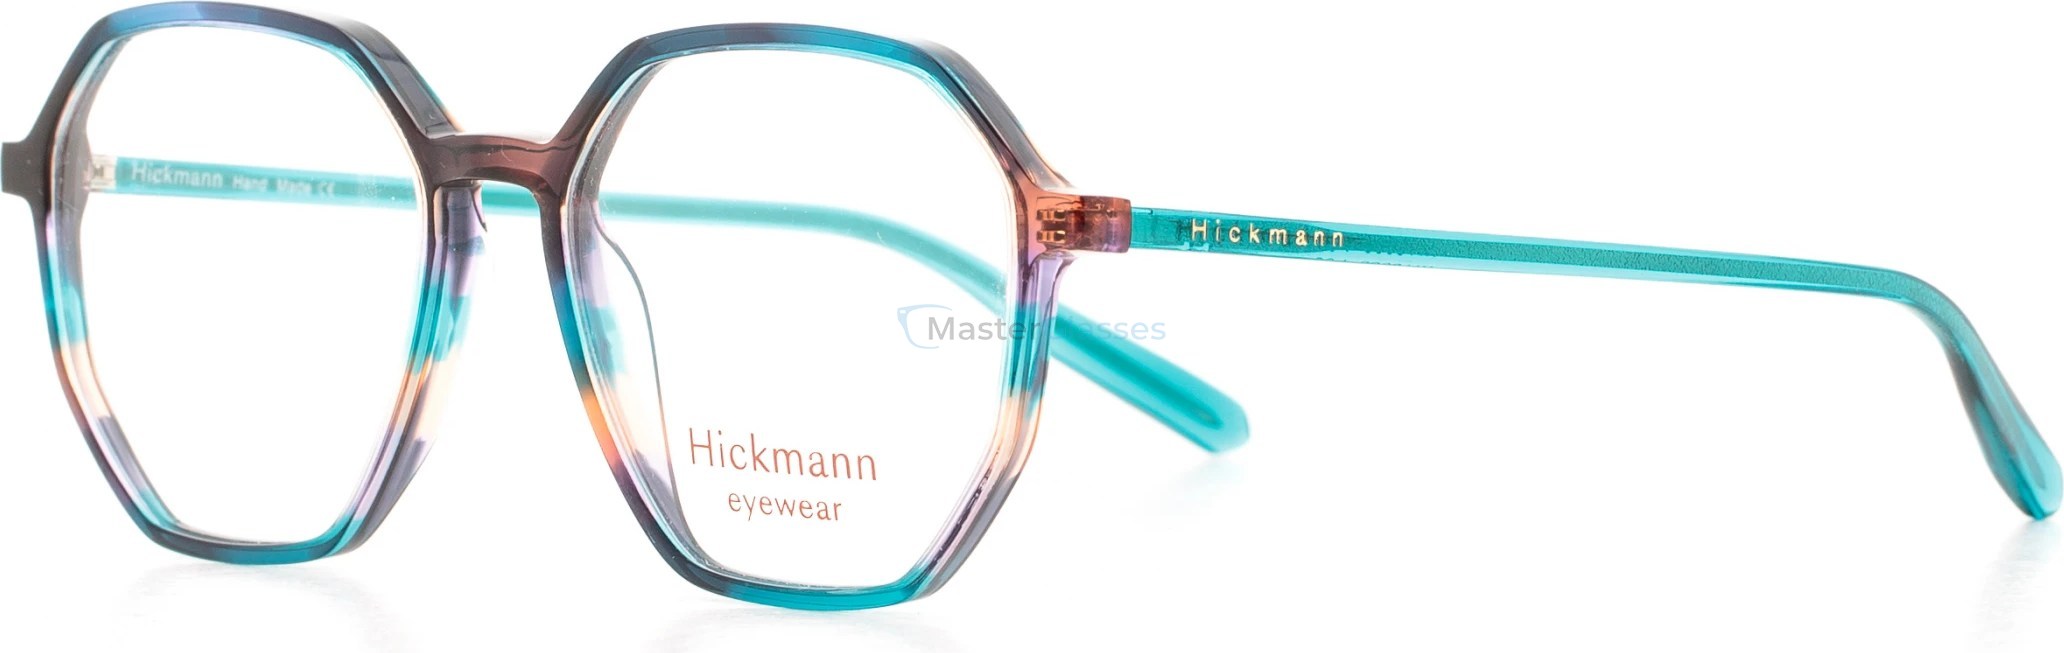  Hickmann HIY6000 P03